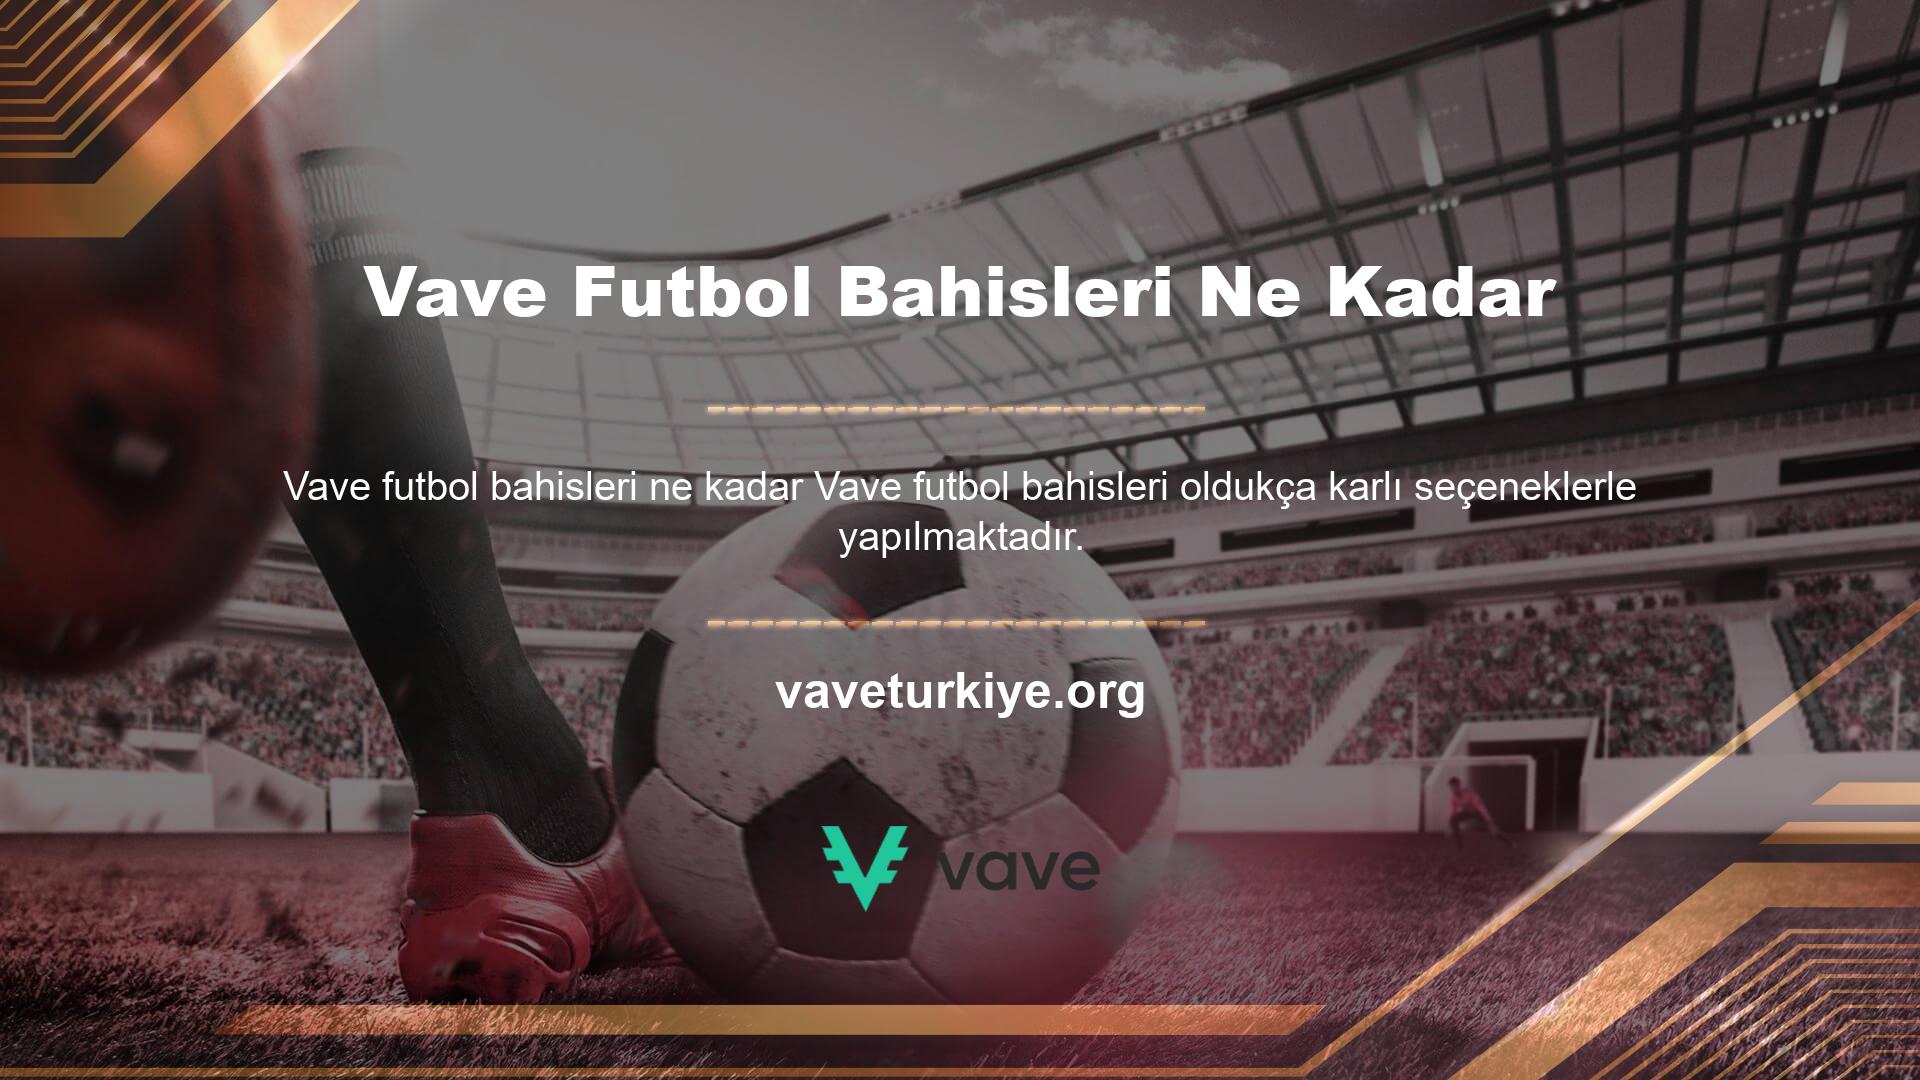 Canlı bahis ofisi, Vave futbol bahislerine ağırlık vererek bahislere odaklanmaktadır